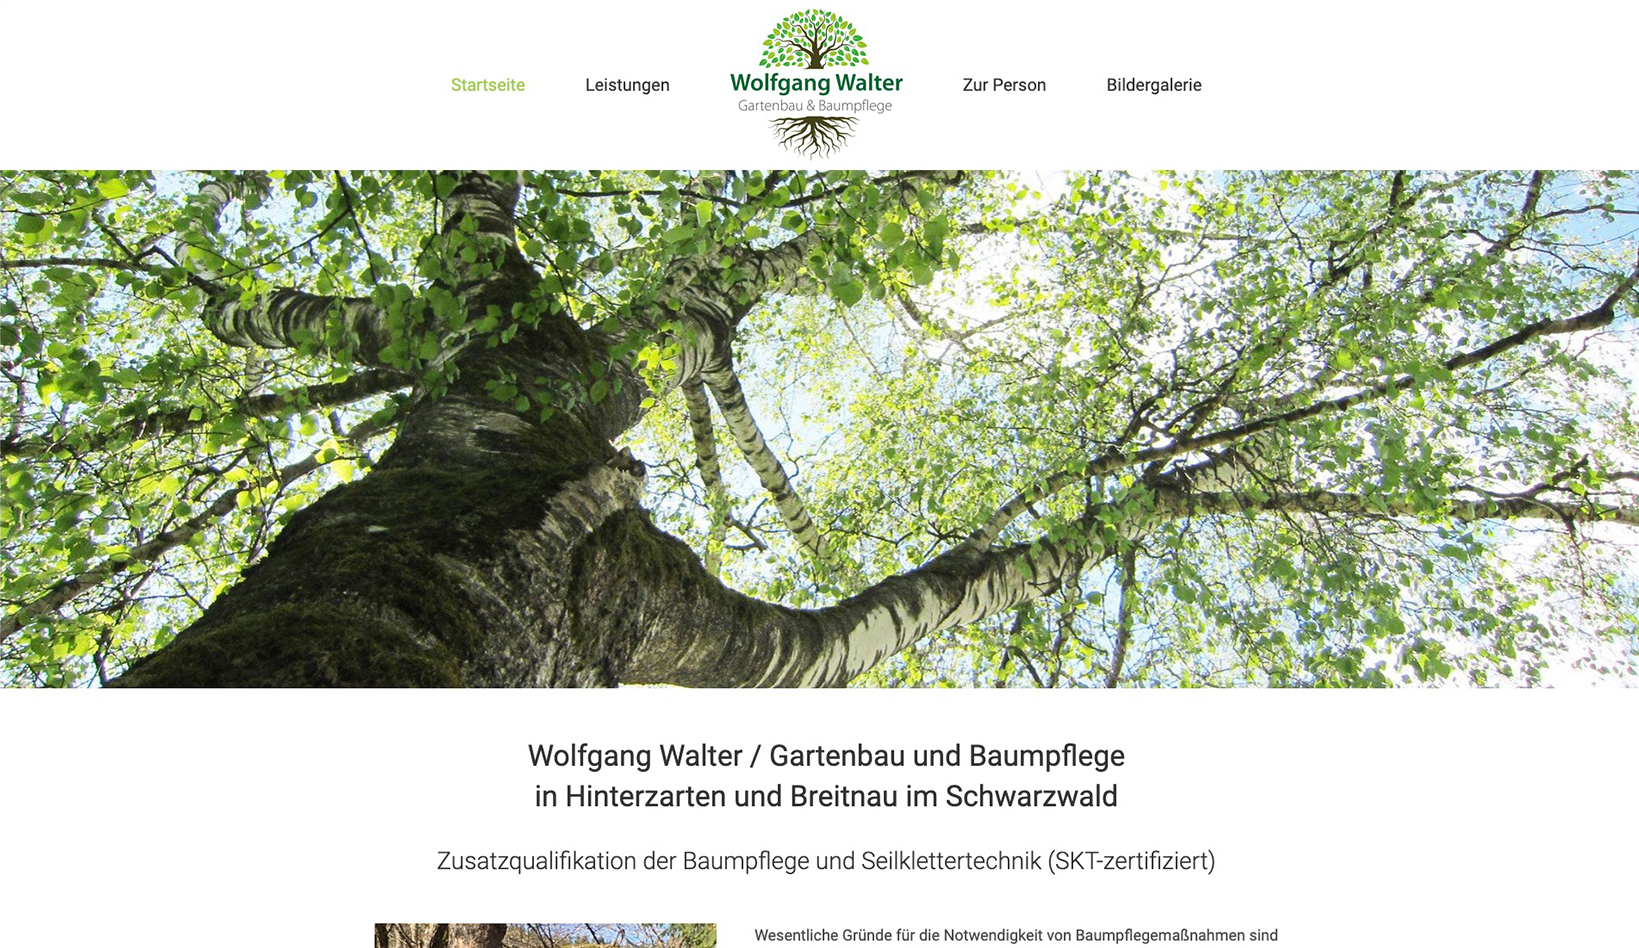 Referenz: Wolfgang Walter, Gartenbau und Baumpflege